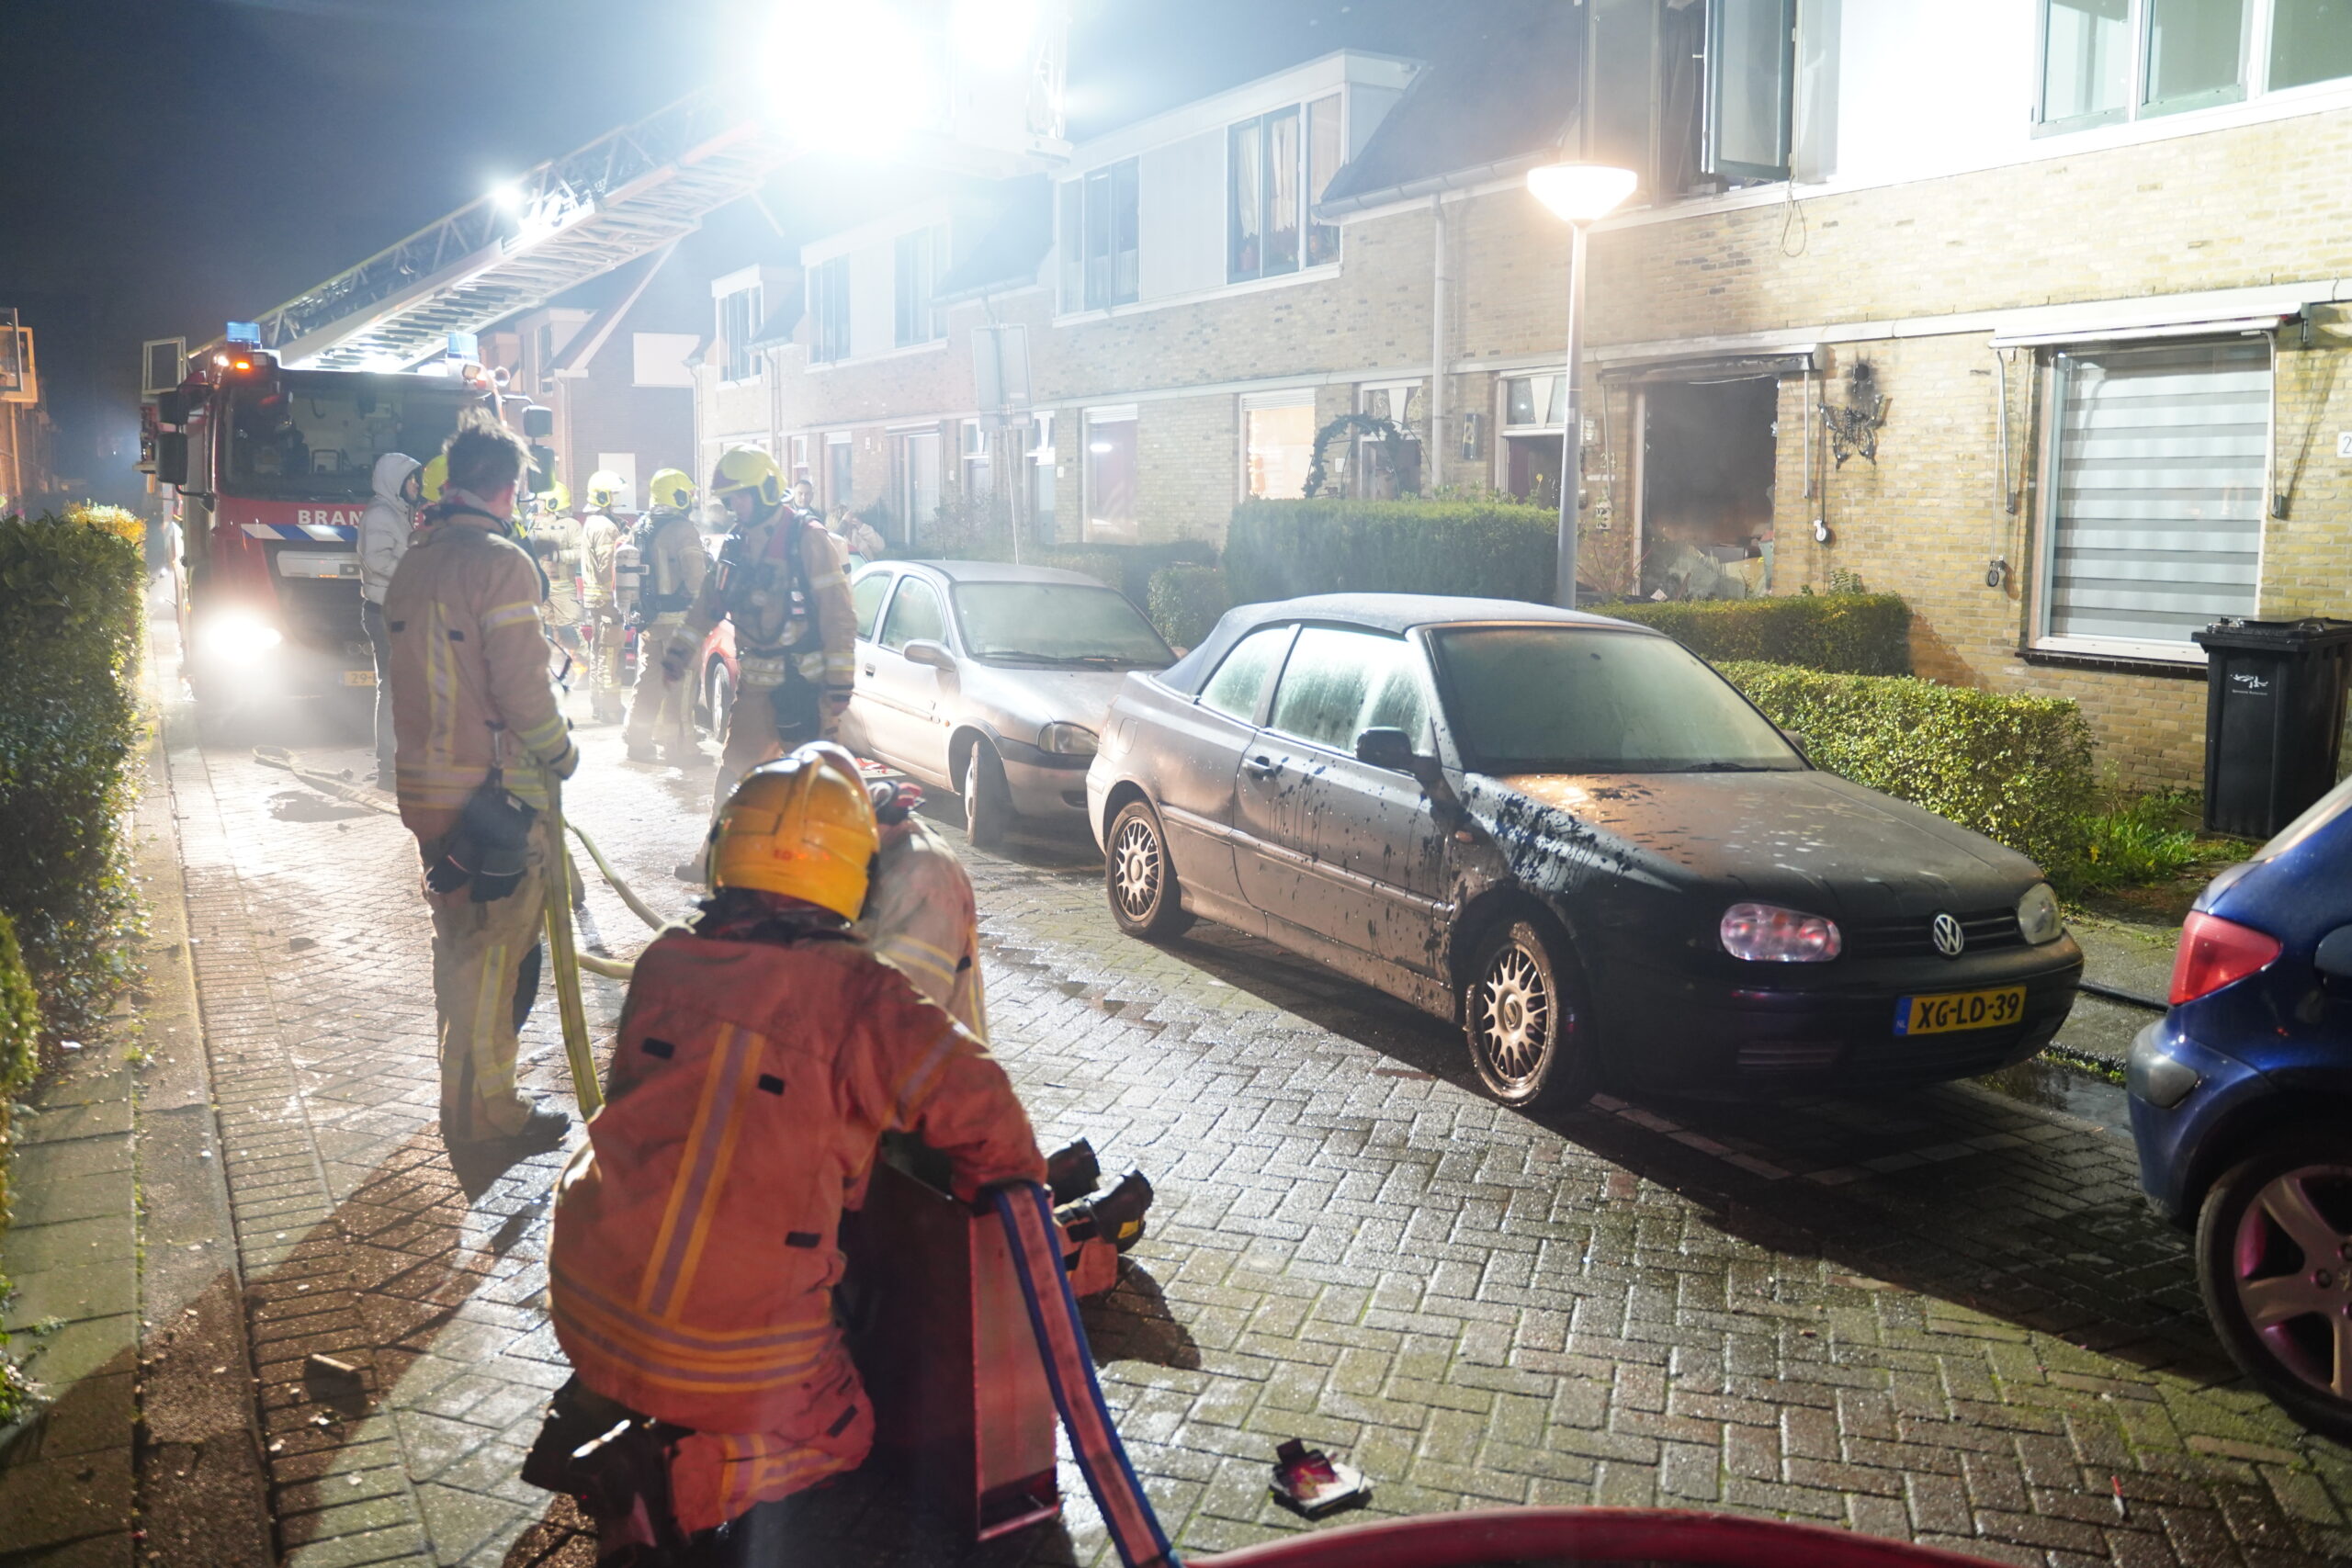 Woning verwoest door brand Rozegaarde Rotterdam - Nieuws op Beeld - 112 ...